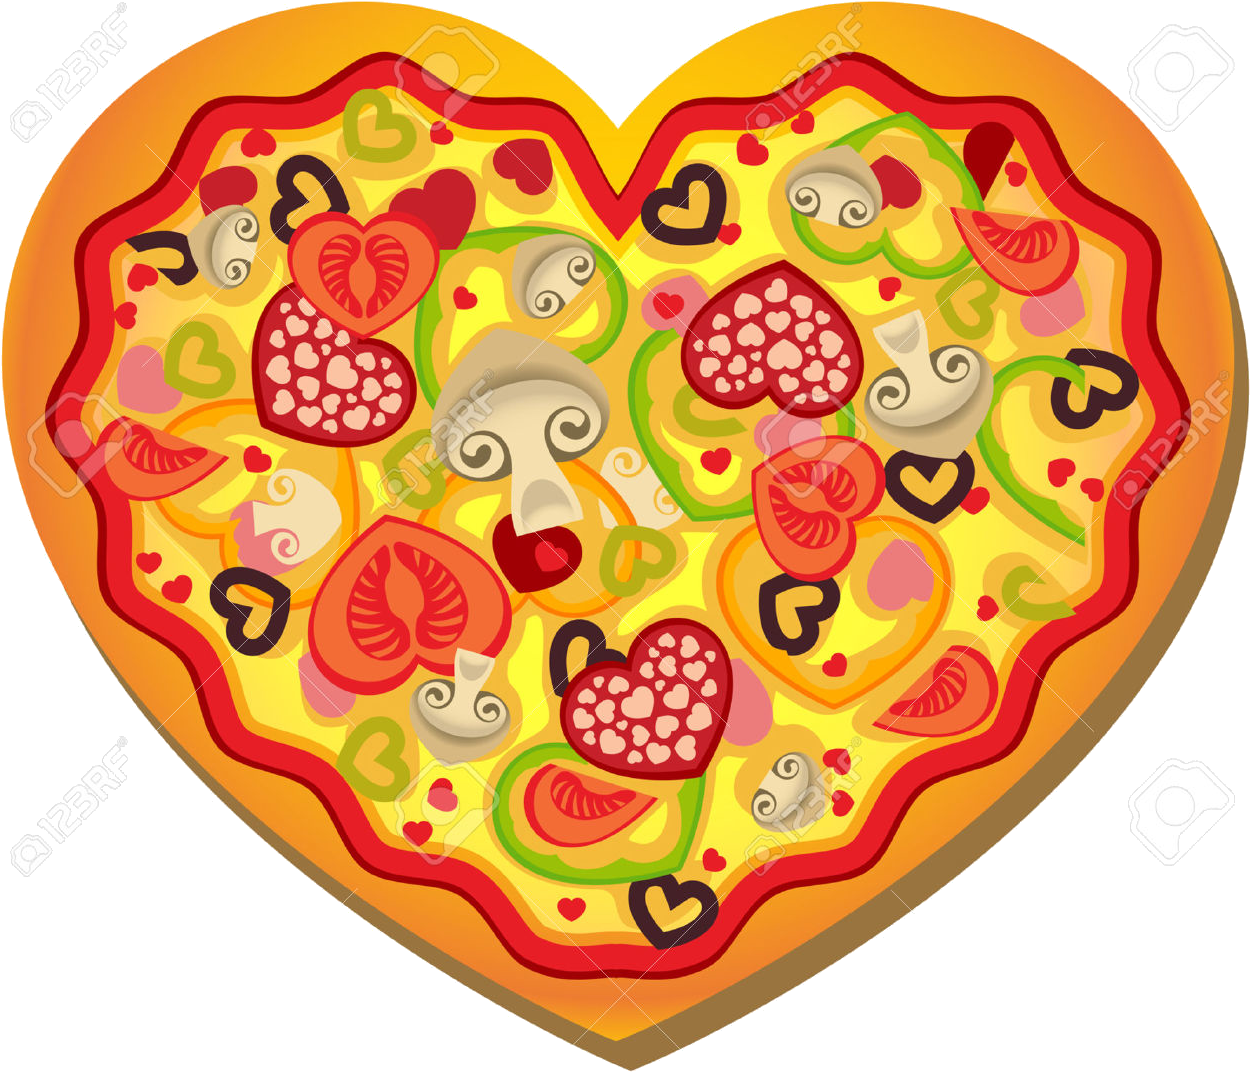 Heart shaped pizza.